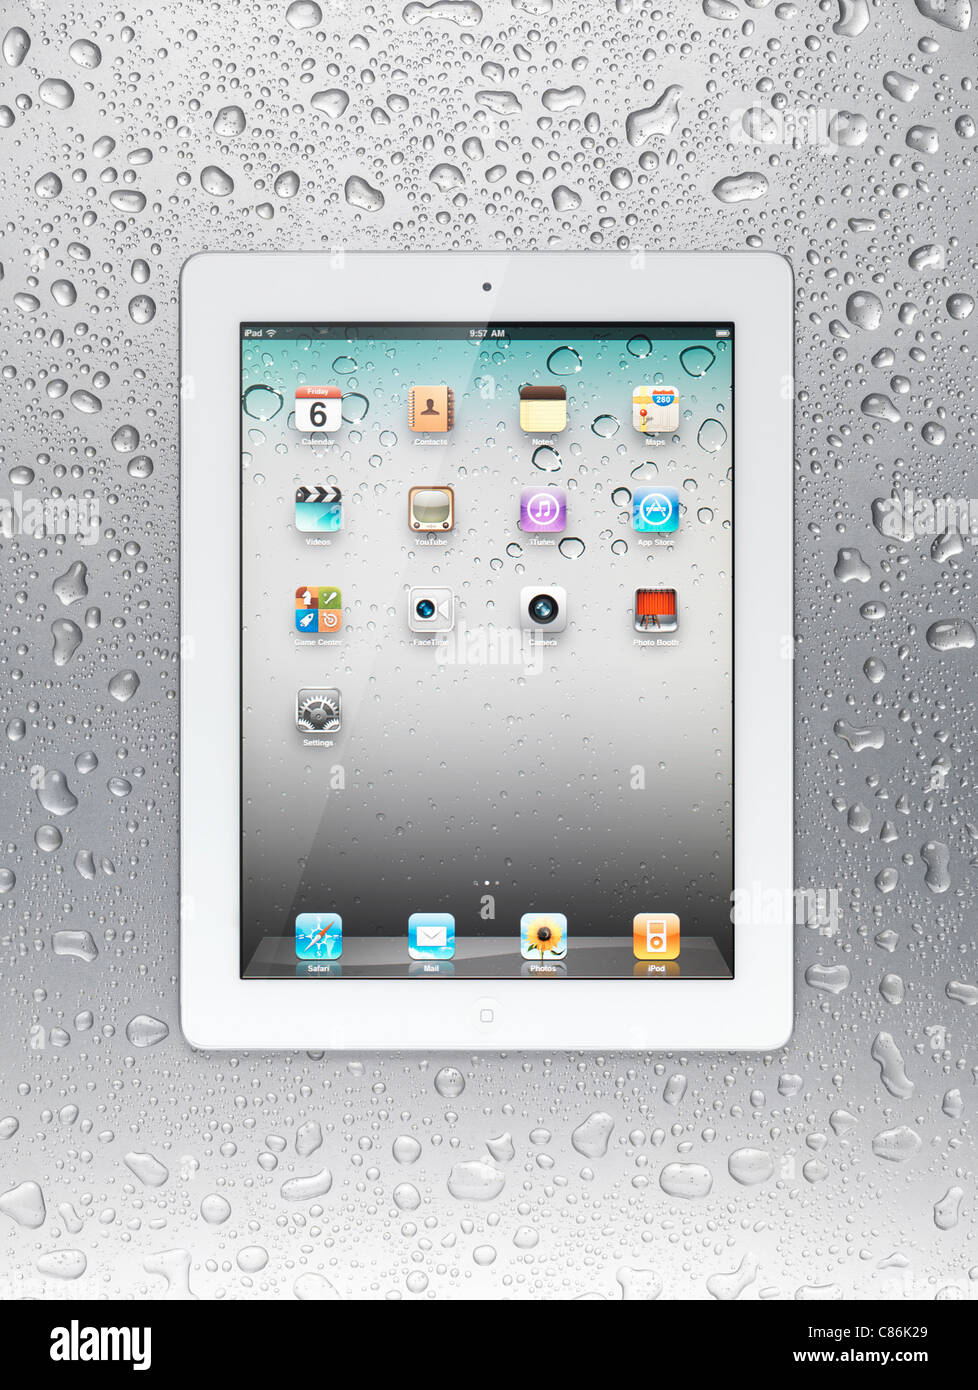 Tablette Apple iPad 2 blanc ordinateur avec des icônes du bureau sur son affichage sur fond d'acier gris humide Banque D'Images